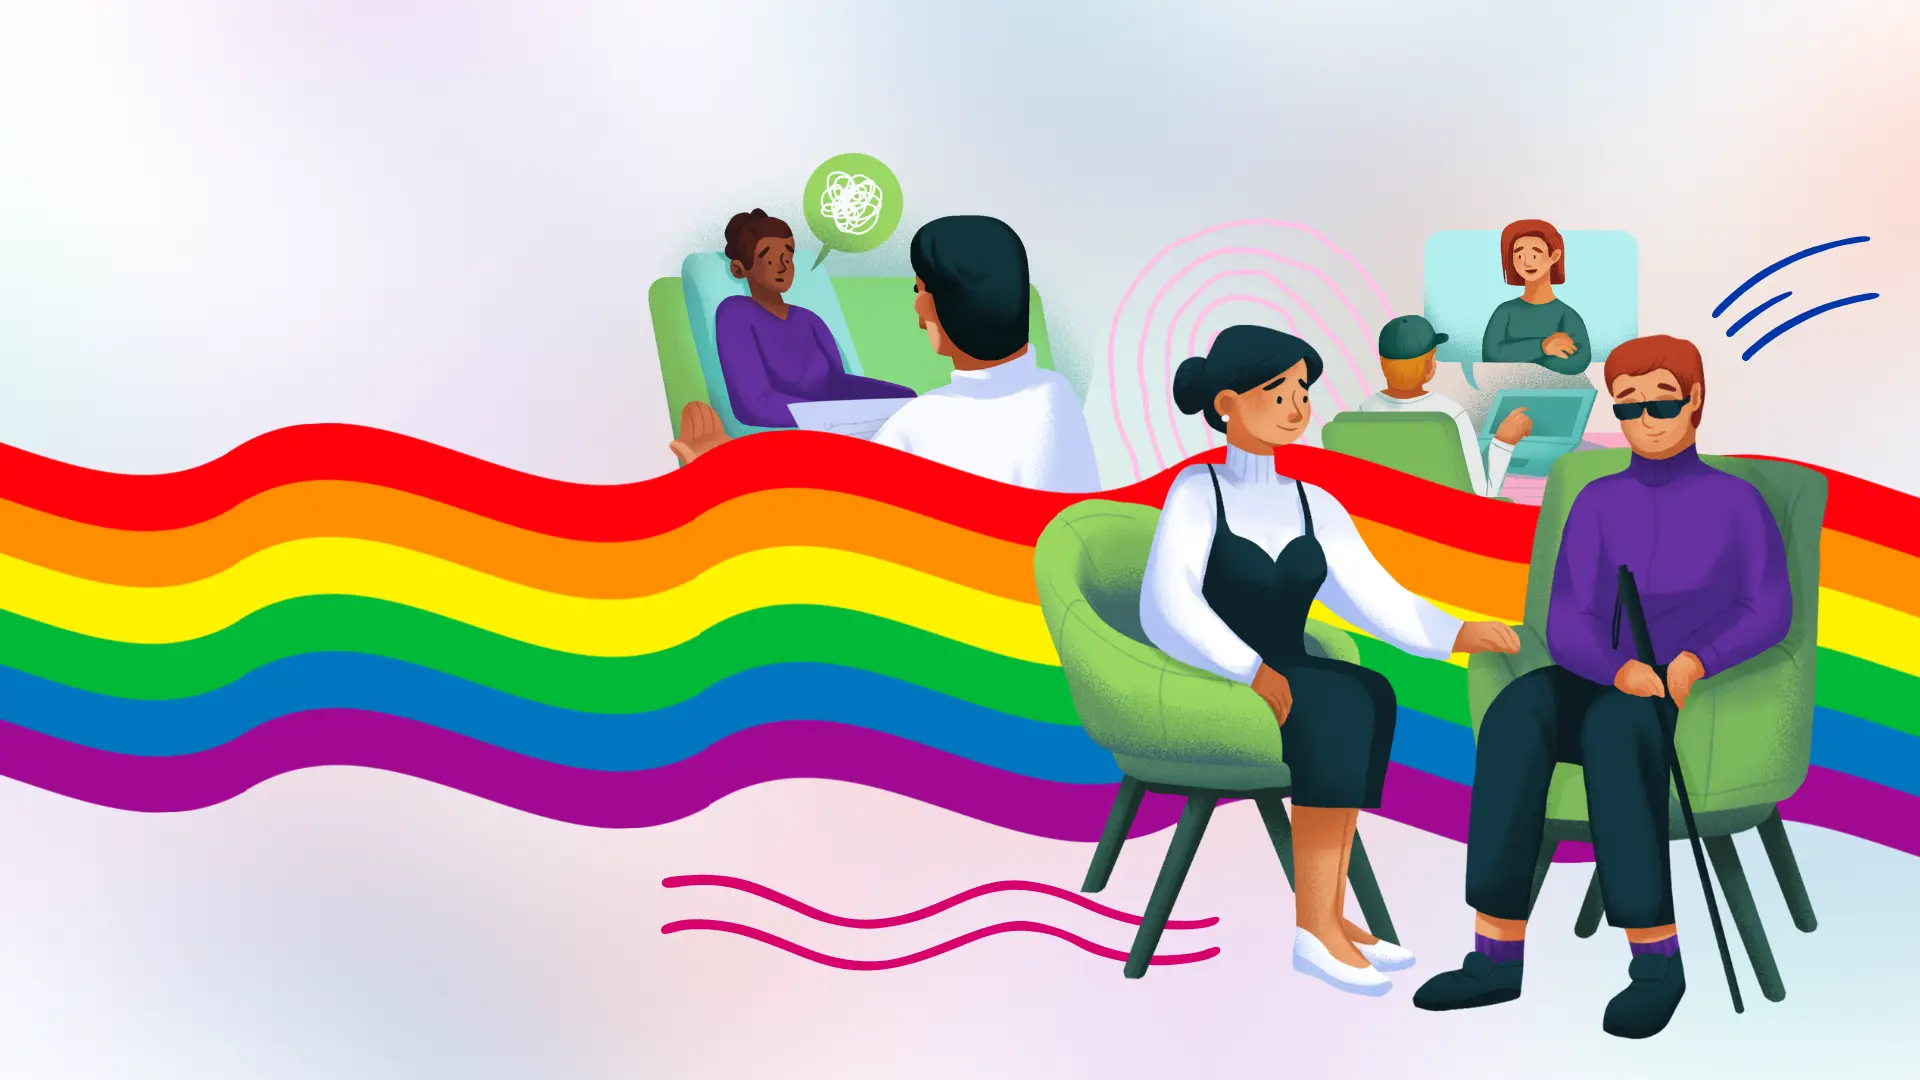 comunidad lgbt psicologia - Qué es la comunidad LGBT más